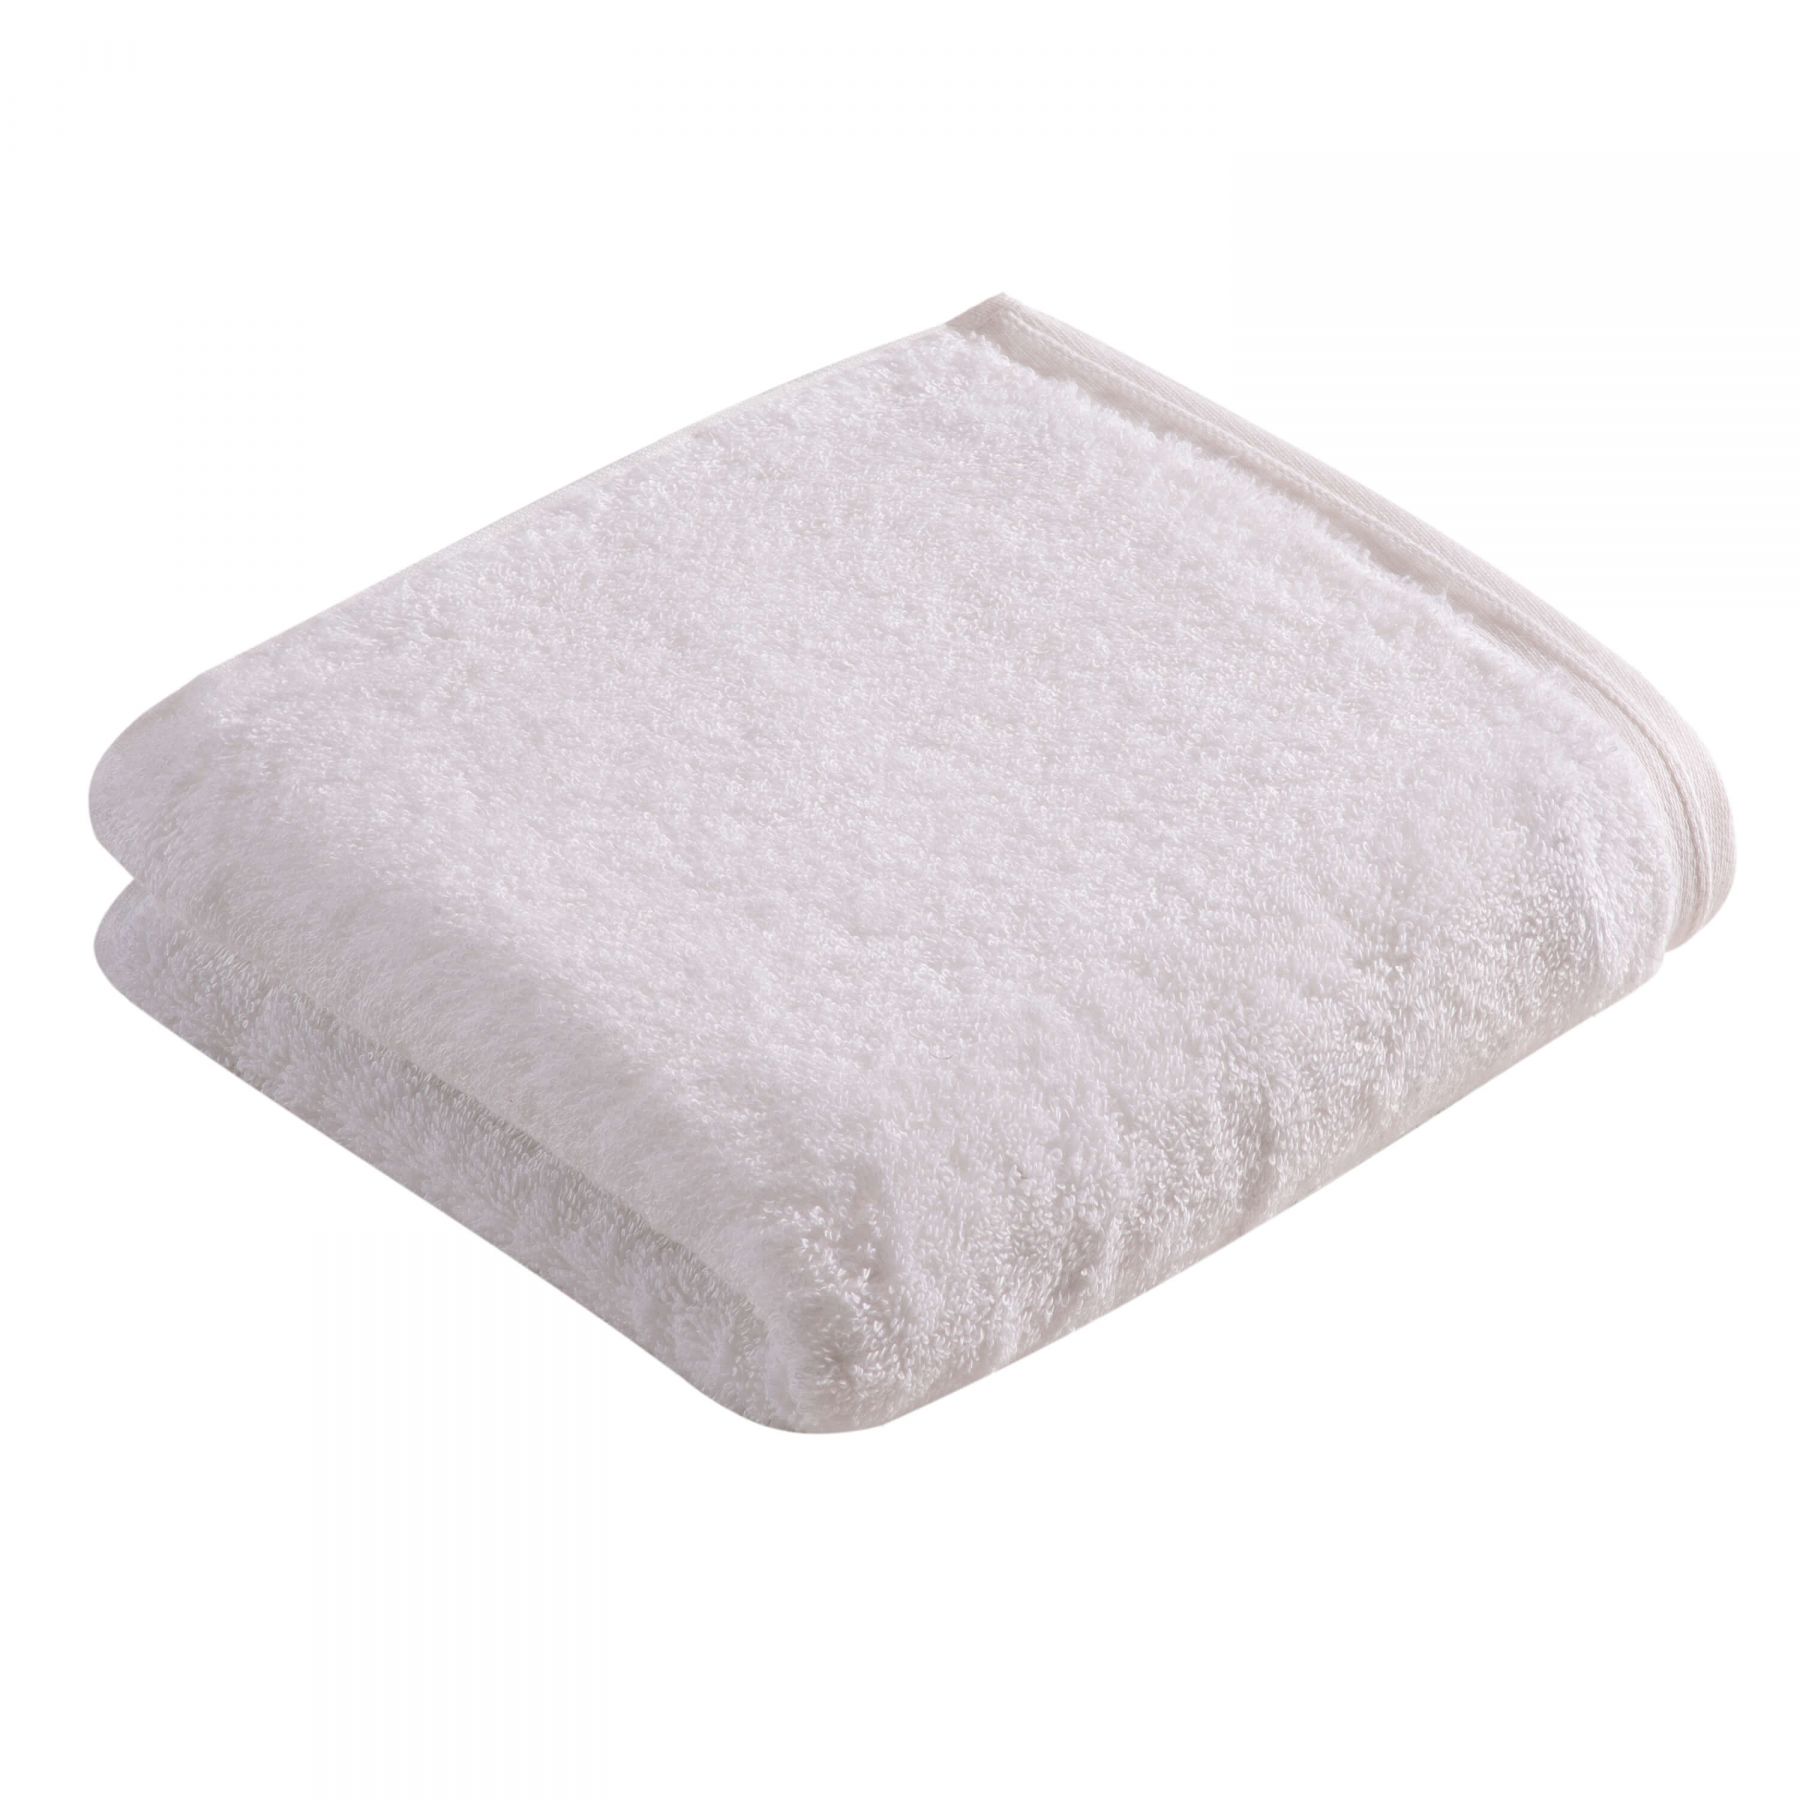 Элитное полотенце Vegan Life White ☞ Размер: 40 x 60 см